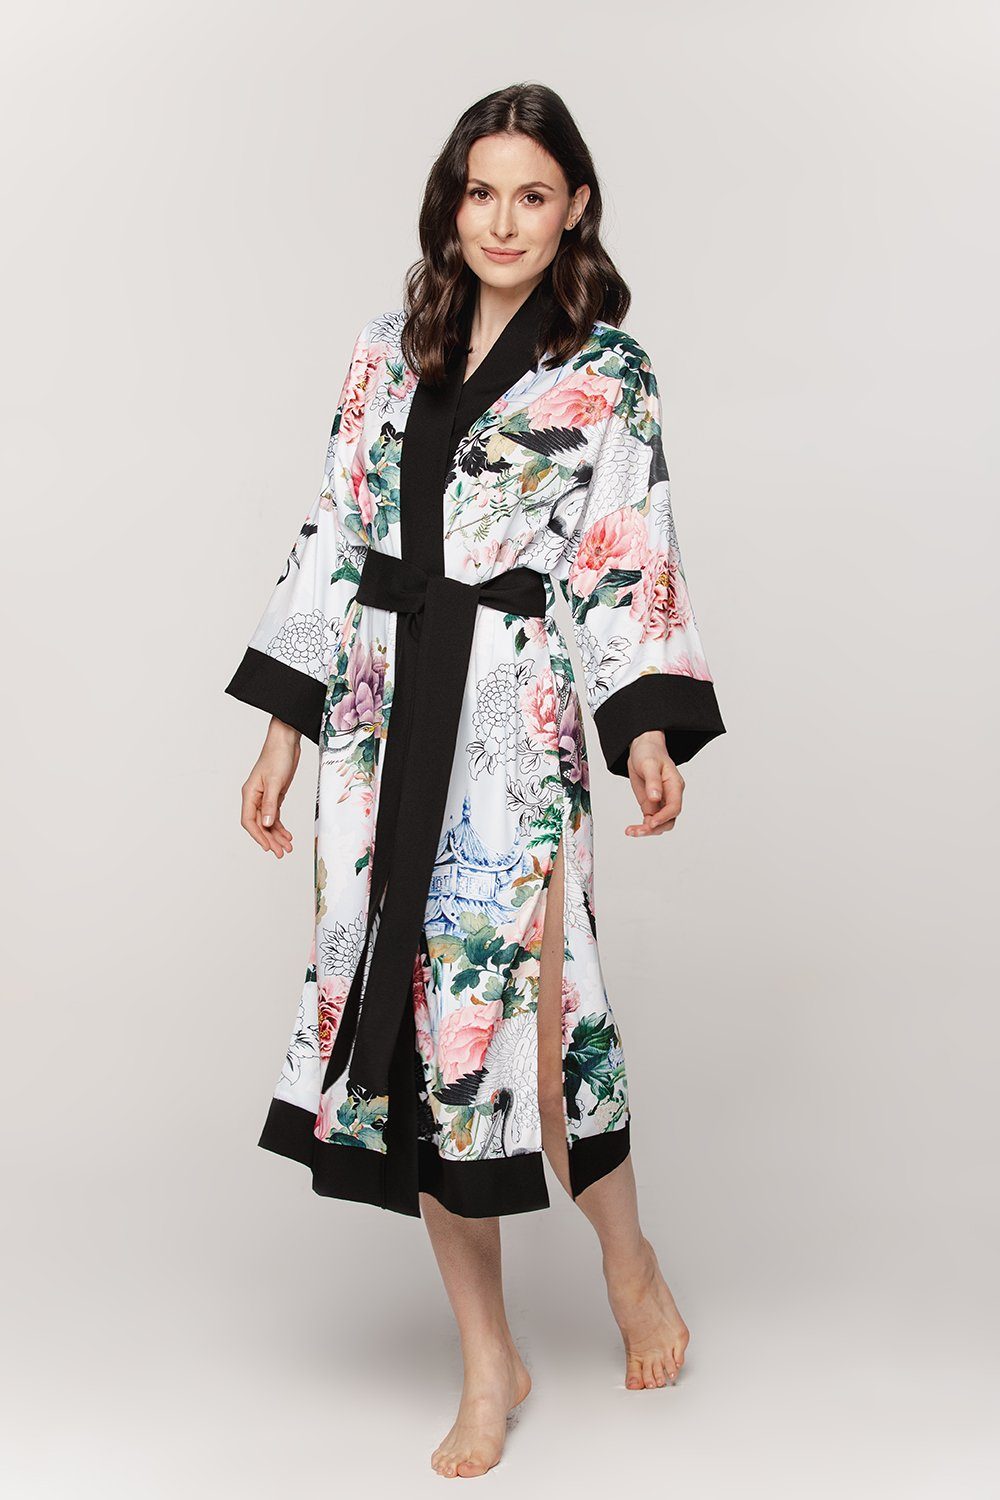 BABEES Kimono Hausmantel Damen Strandkleid Orient Morgenrock Bademantel Kimono